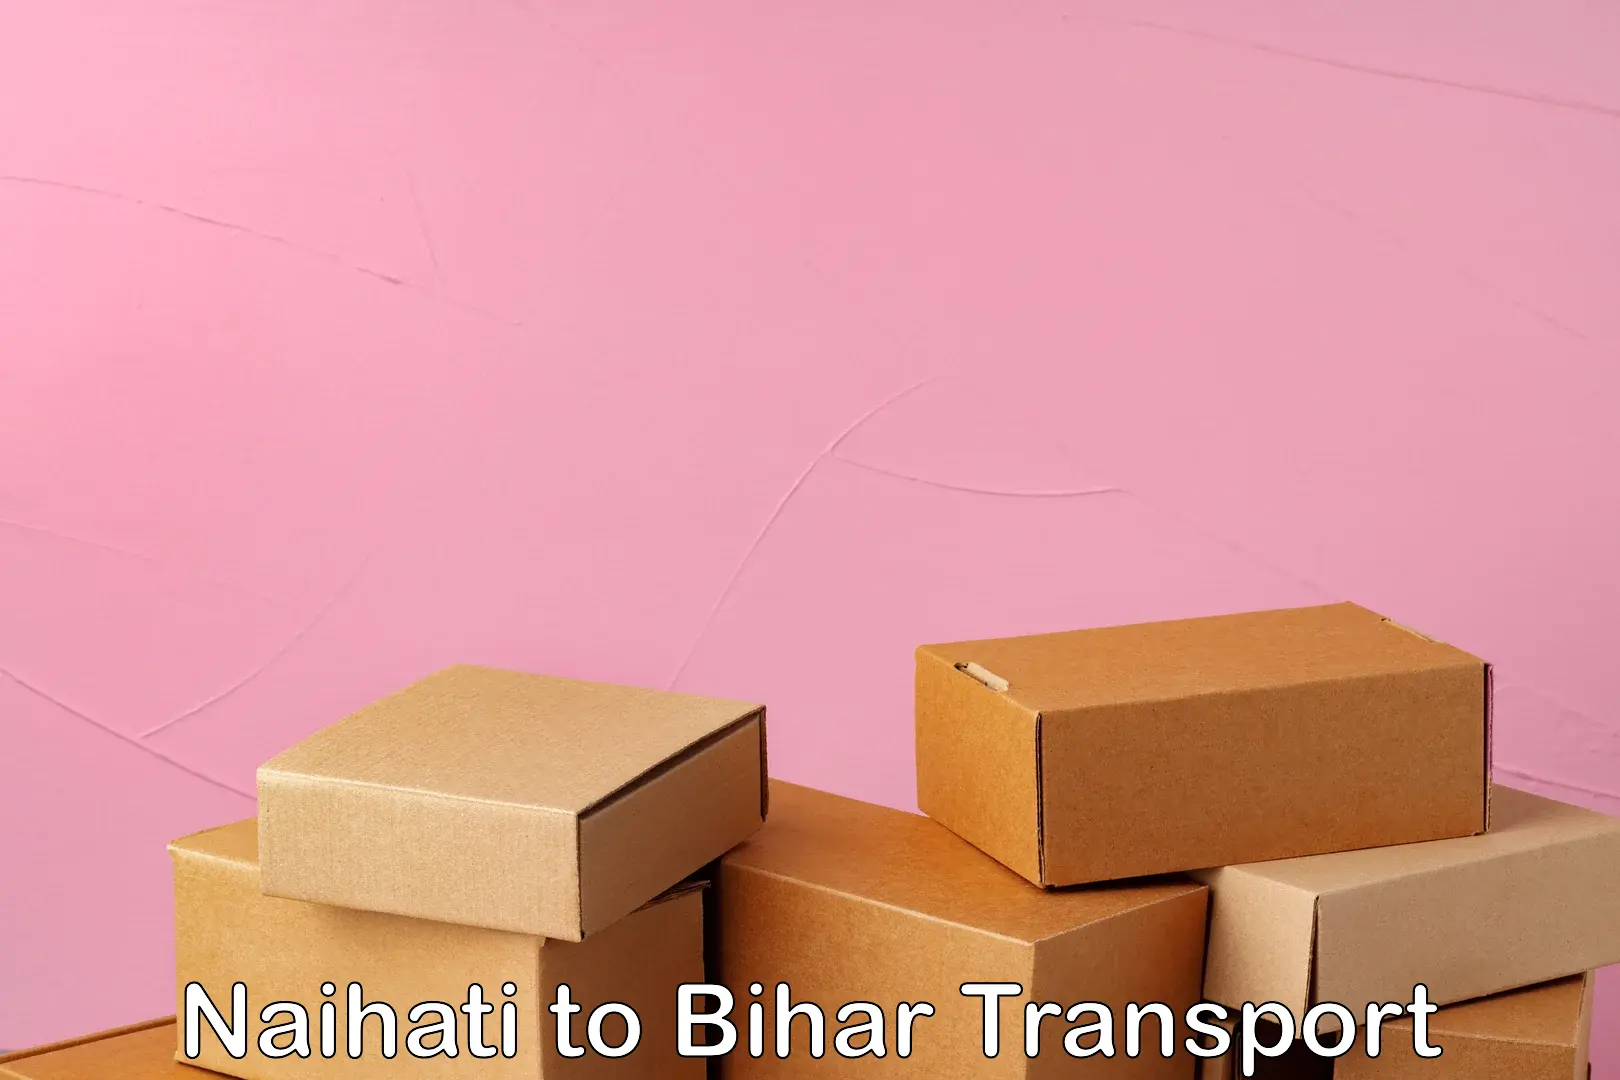 Land transport services in Naihati to Dighwara